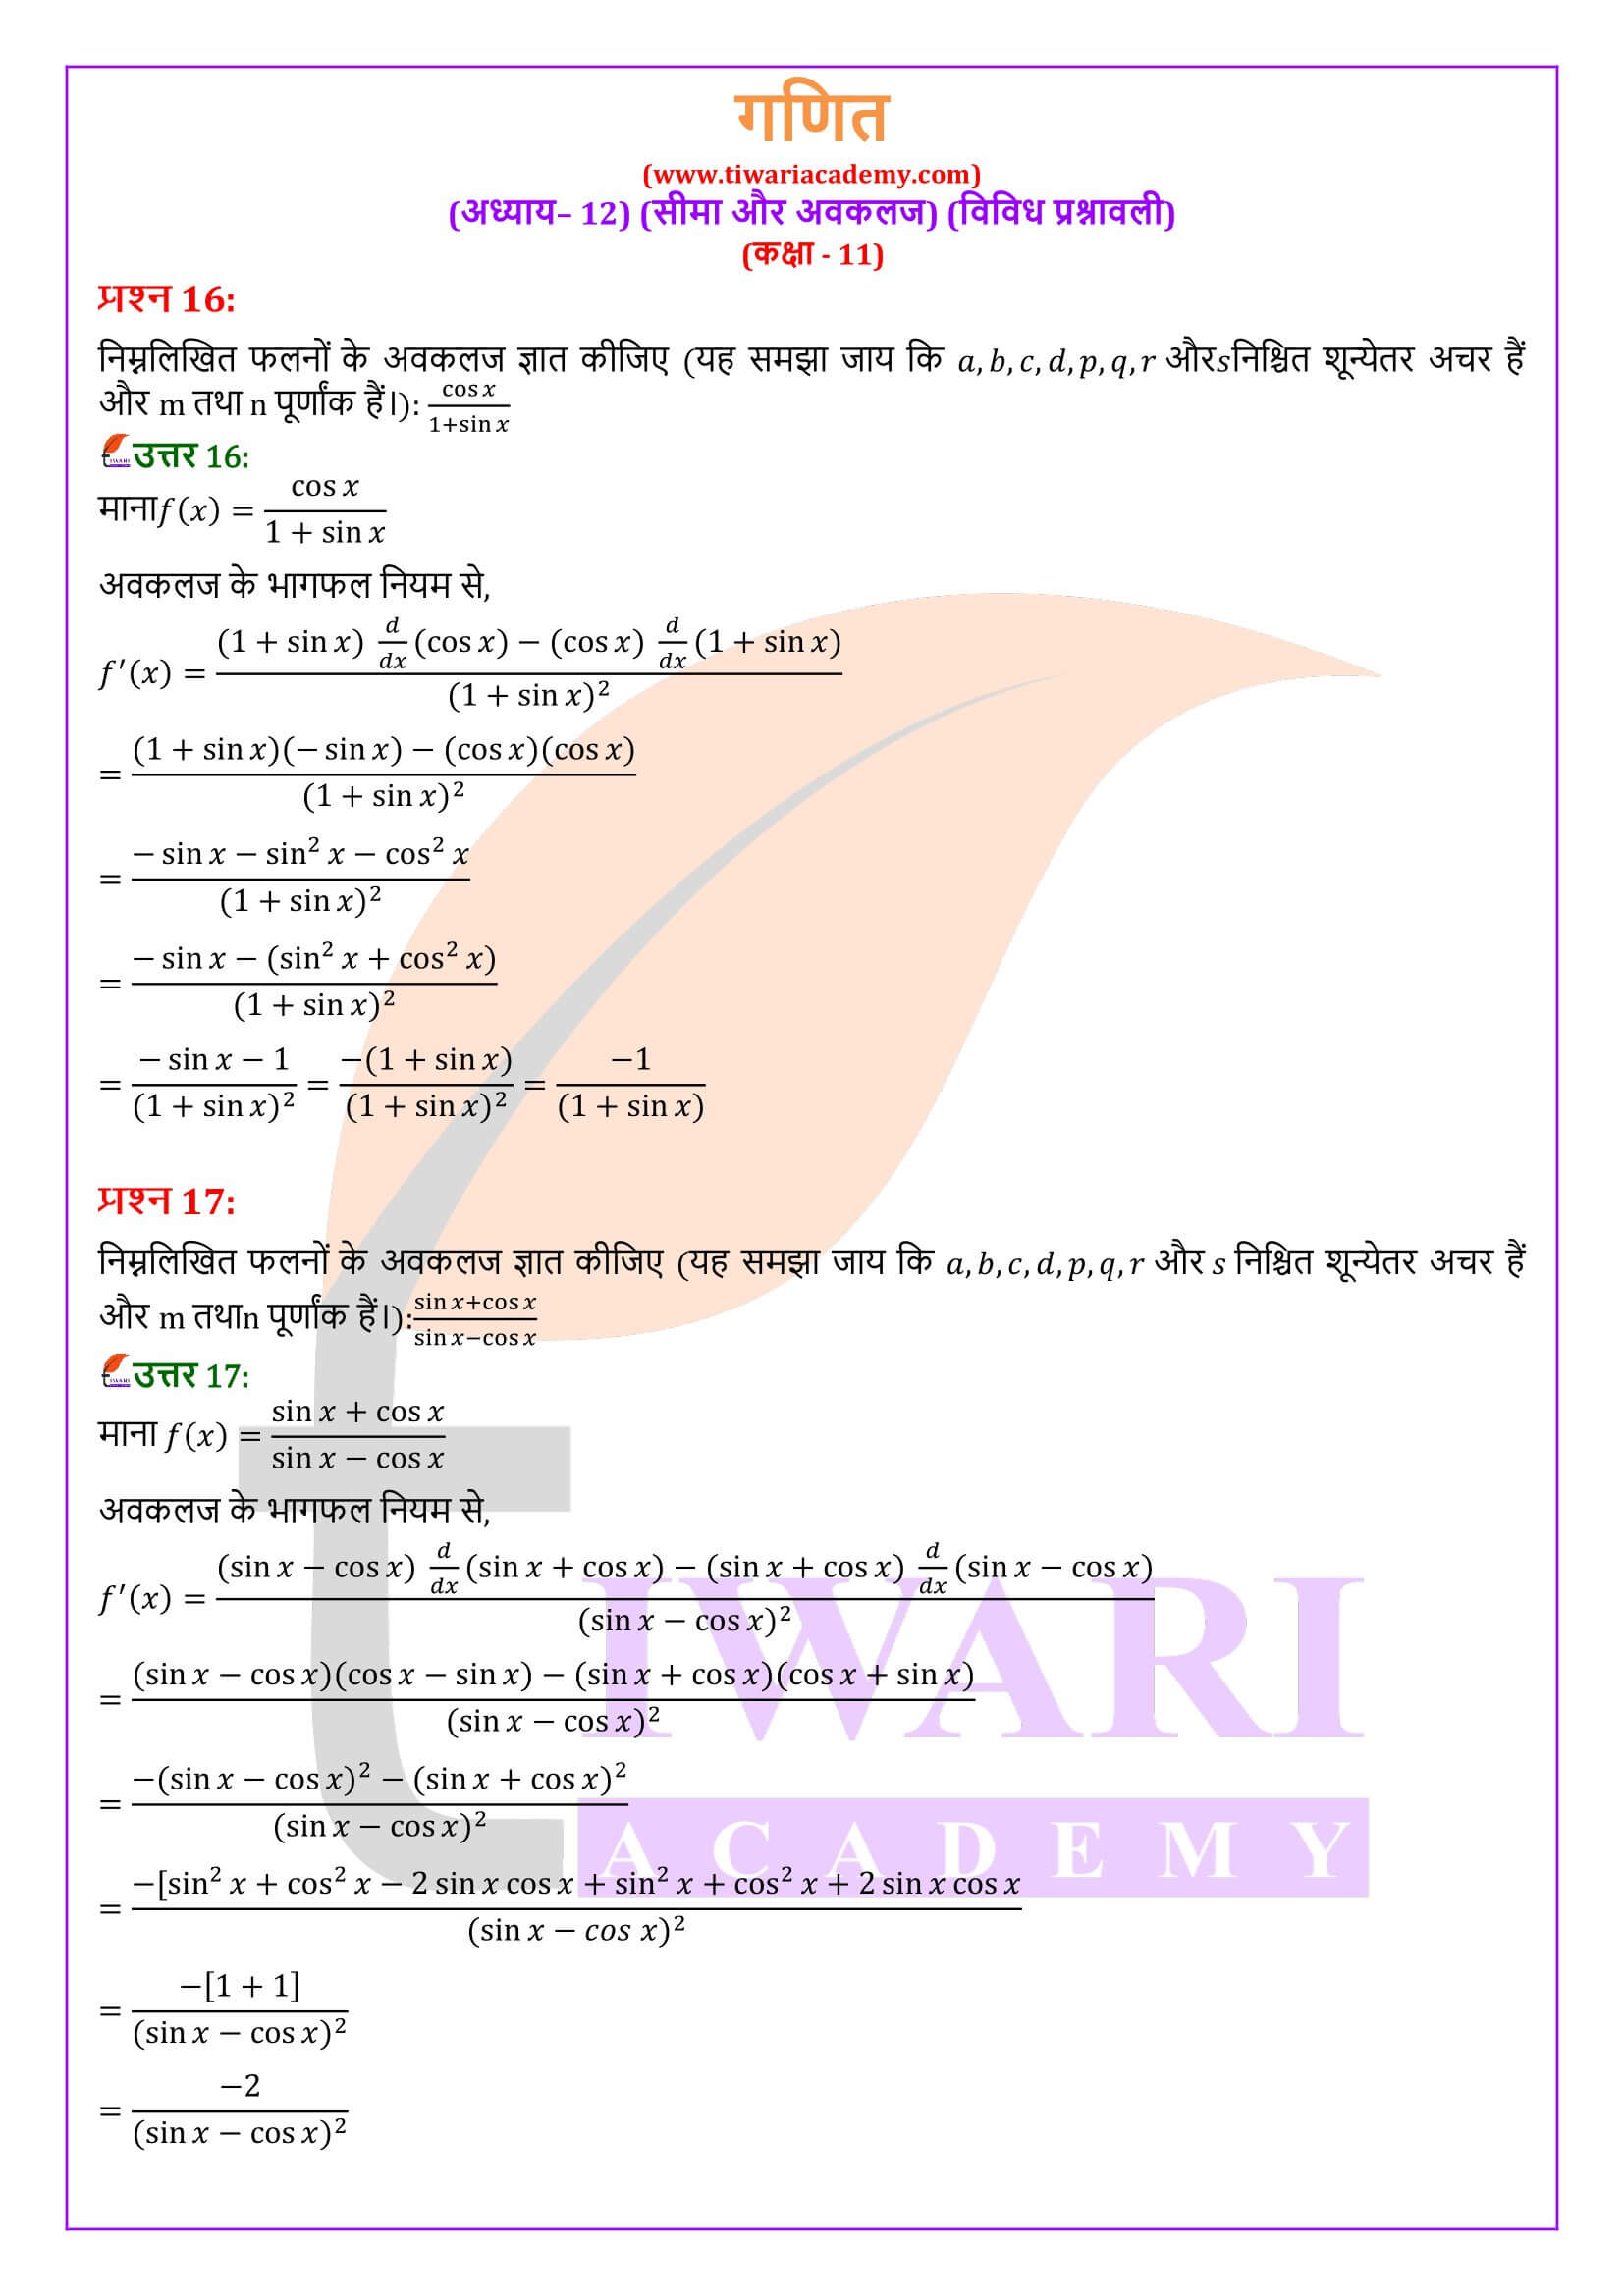 एनसीईआरटी समाधान कक्षा 11 गणित अध्याय 12 विविध अभ्यास हिंदी मीडियम में हल